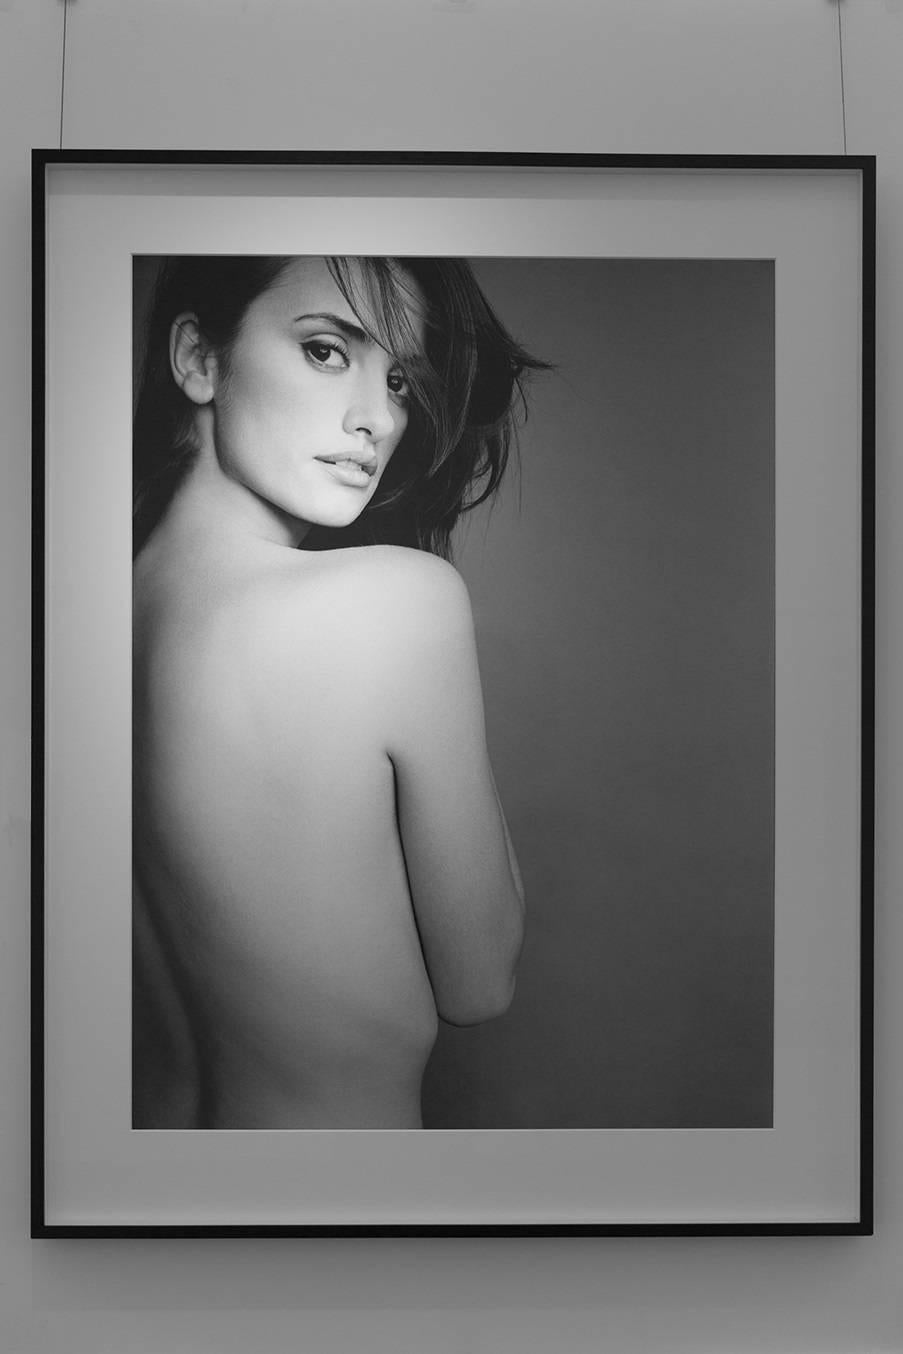 Penelope Cruz – Aktporträt des Filmstars und Modells – Photograph von Antoine Verglas